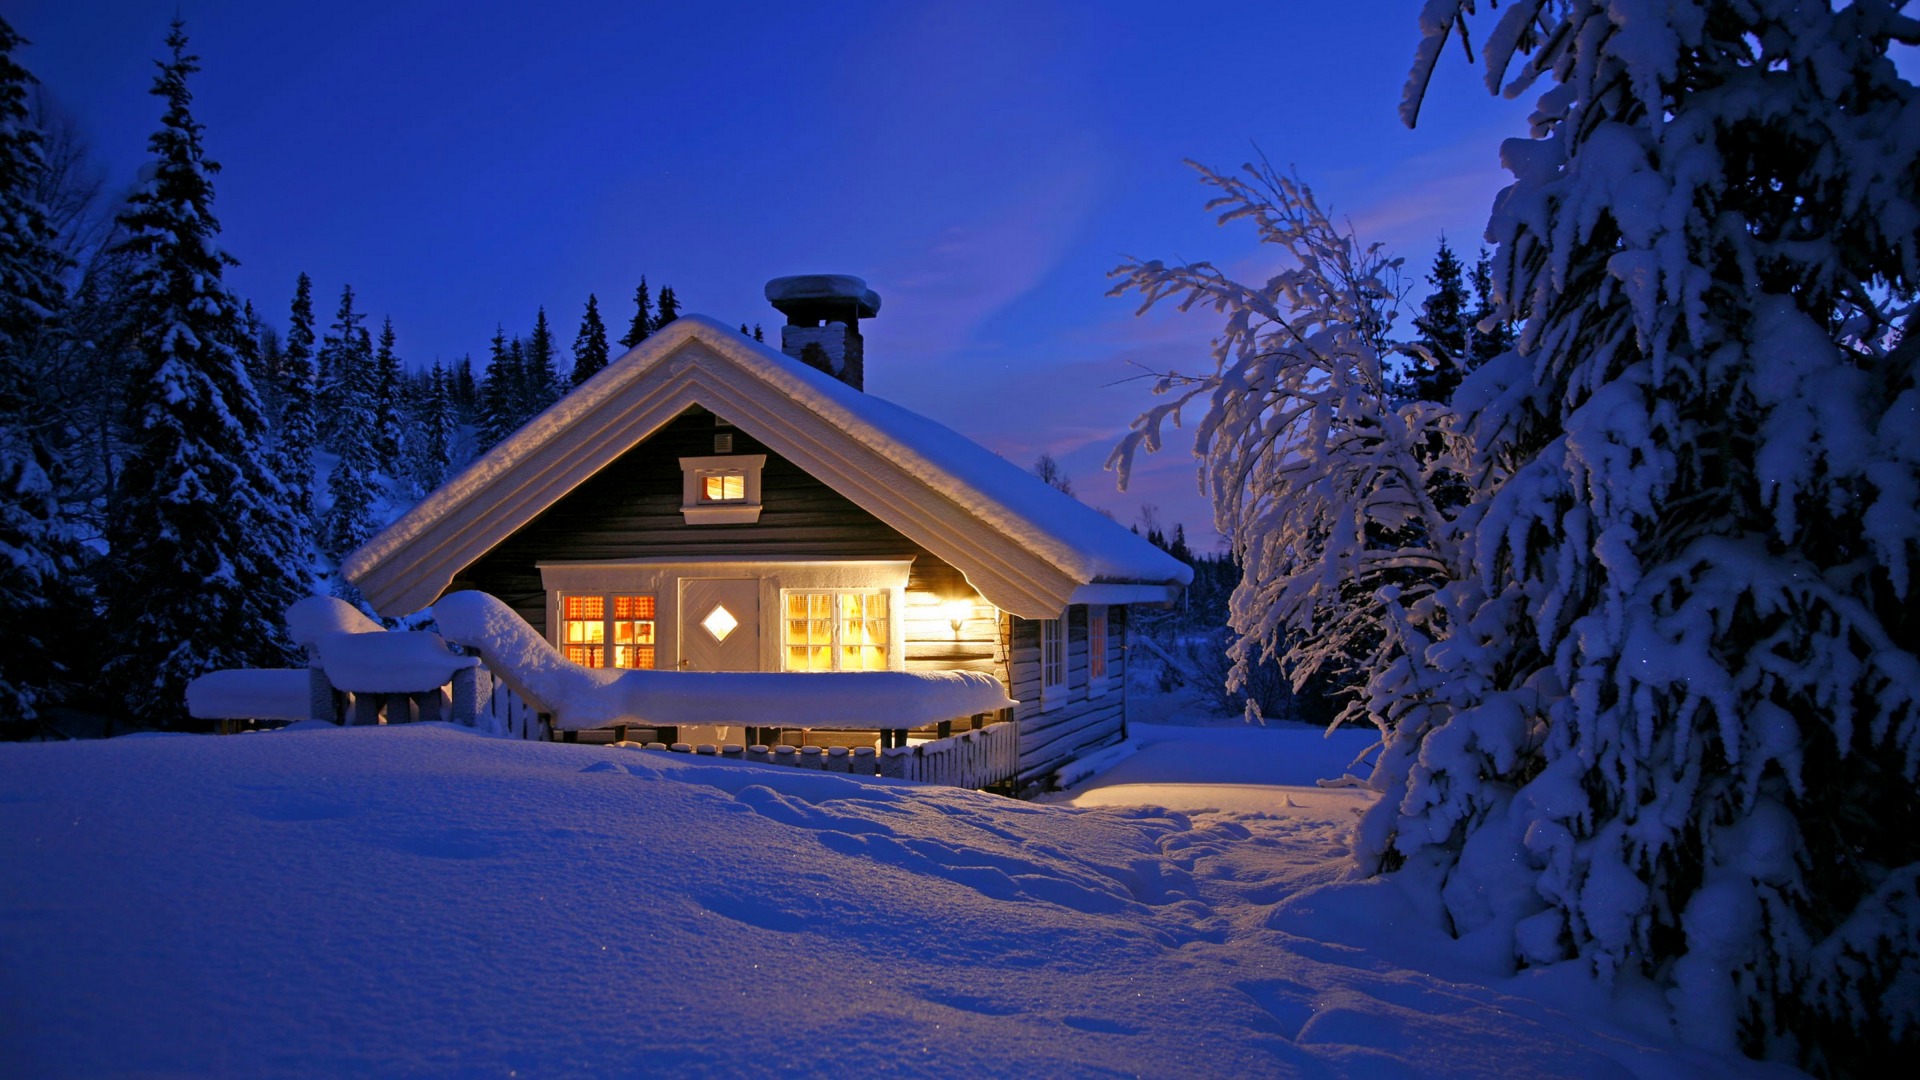 冬天,雪,房子,森林,天空,宁静,风景桌面壁纸